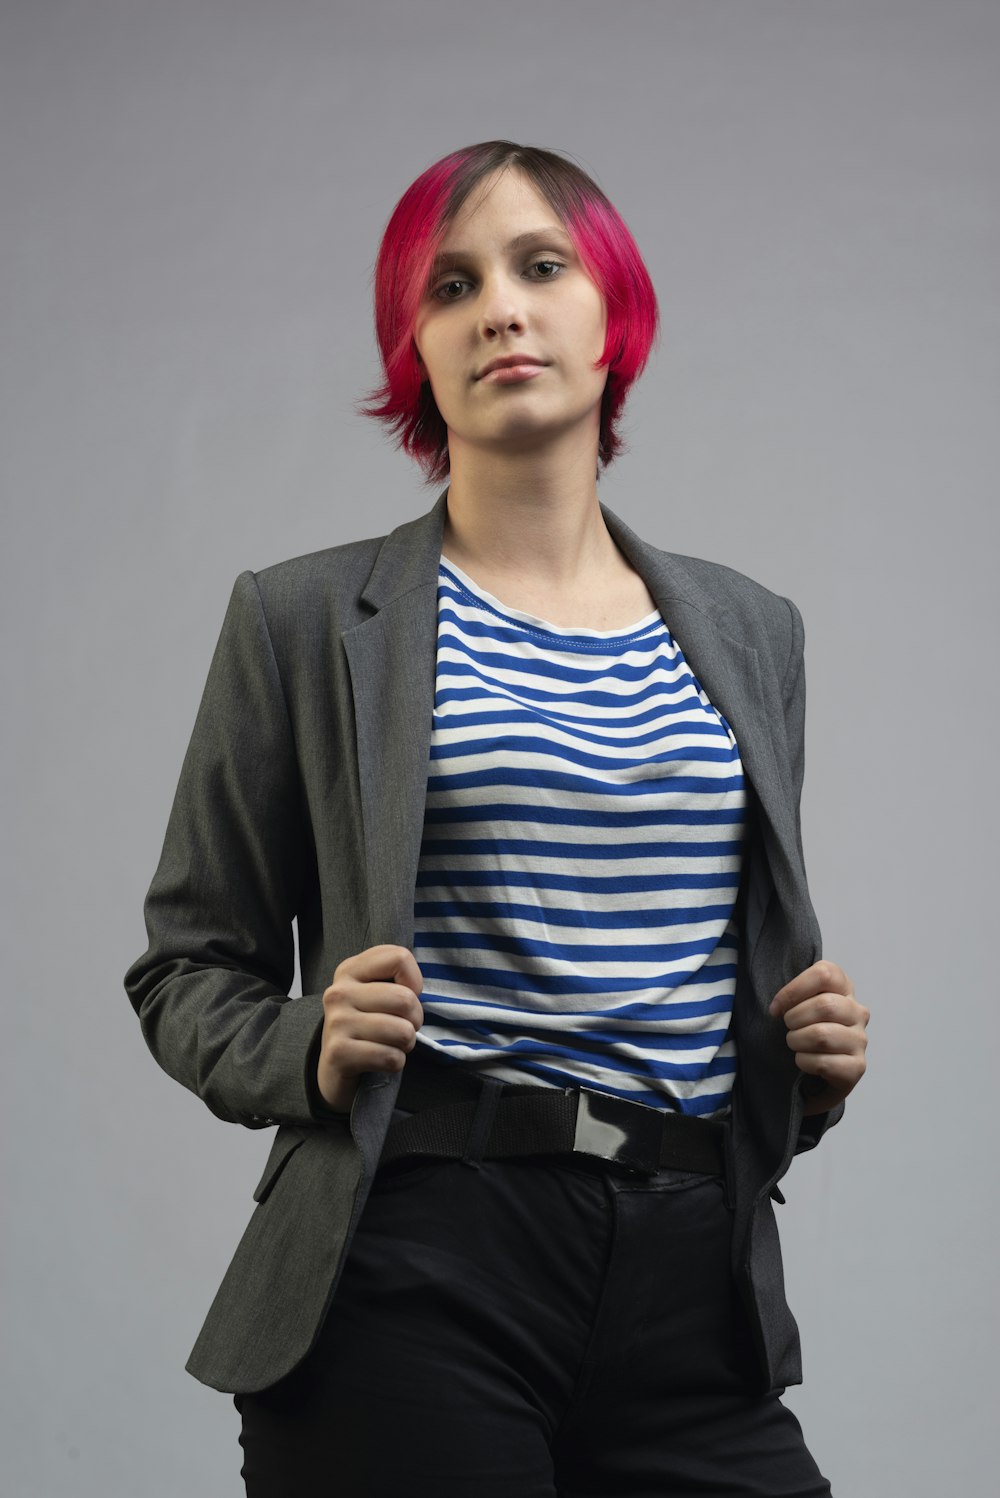 Una donna con i capelli rosa e una camicia a righe